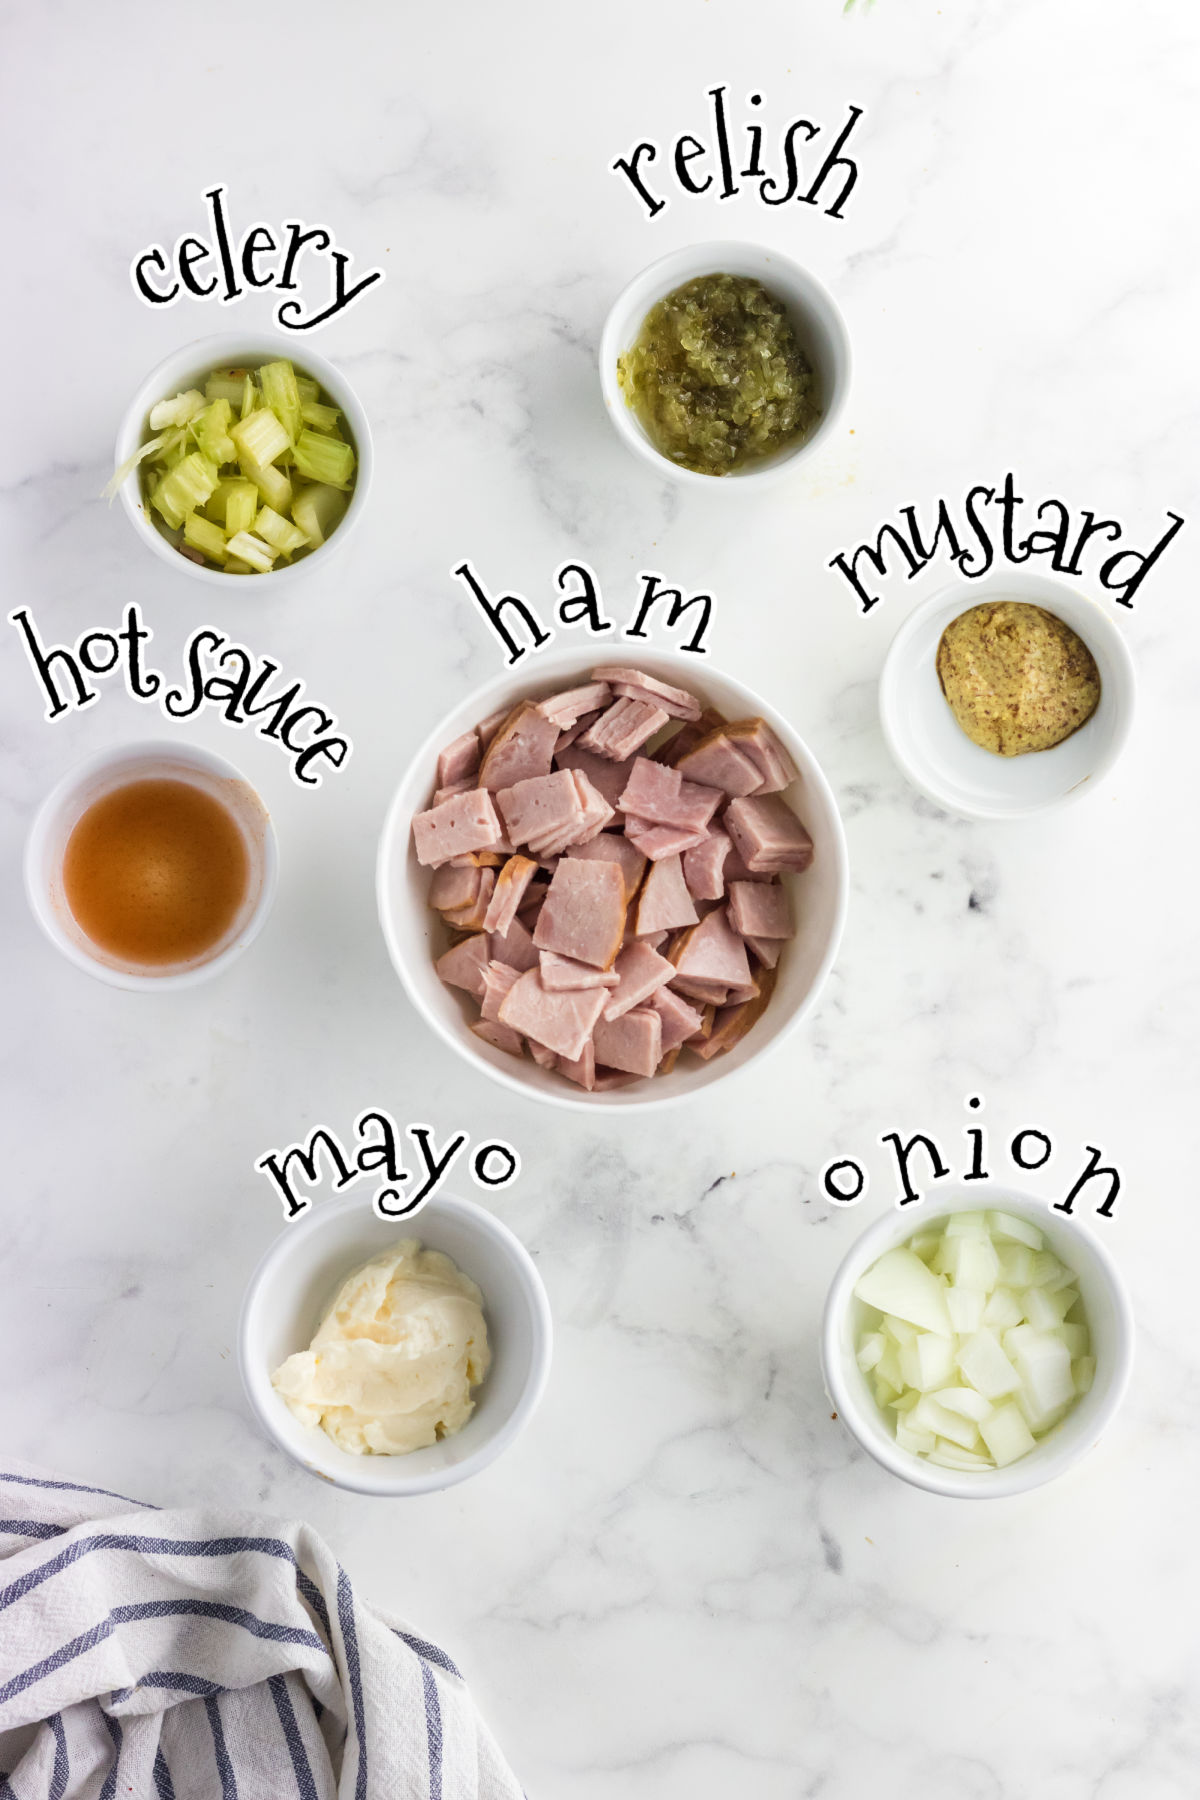 Ingredients for deviled ham salad.